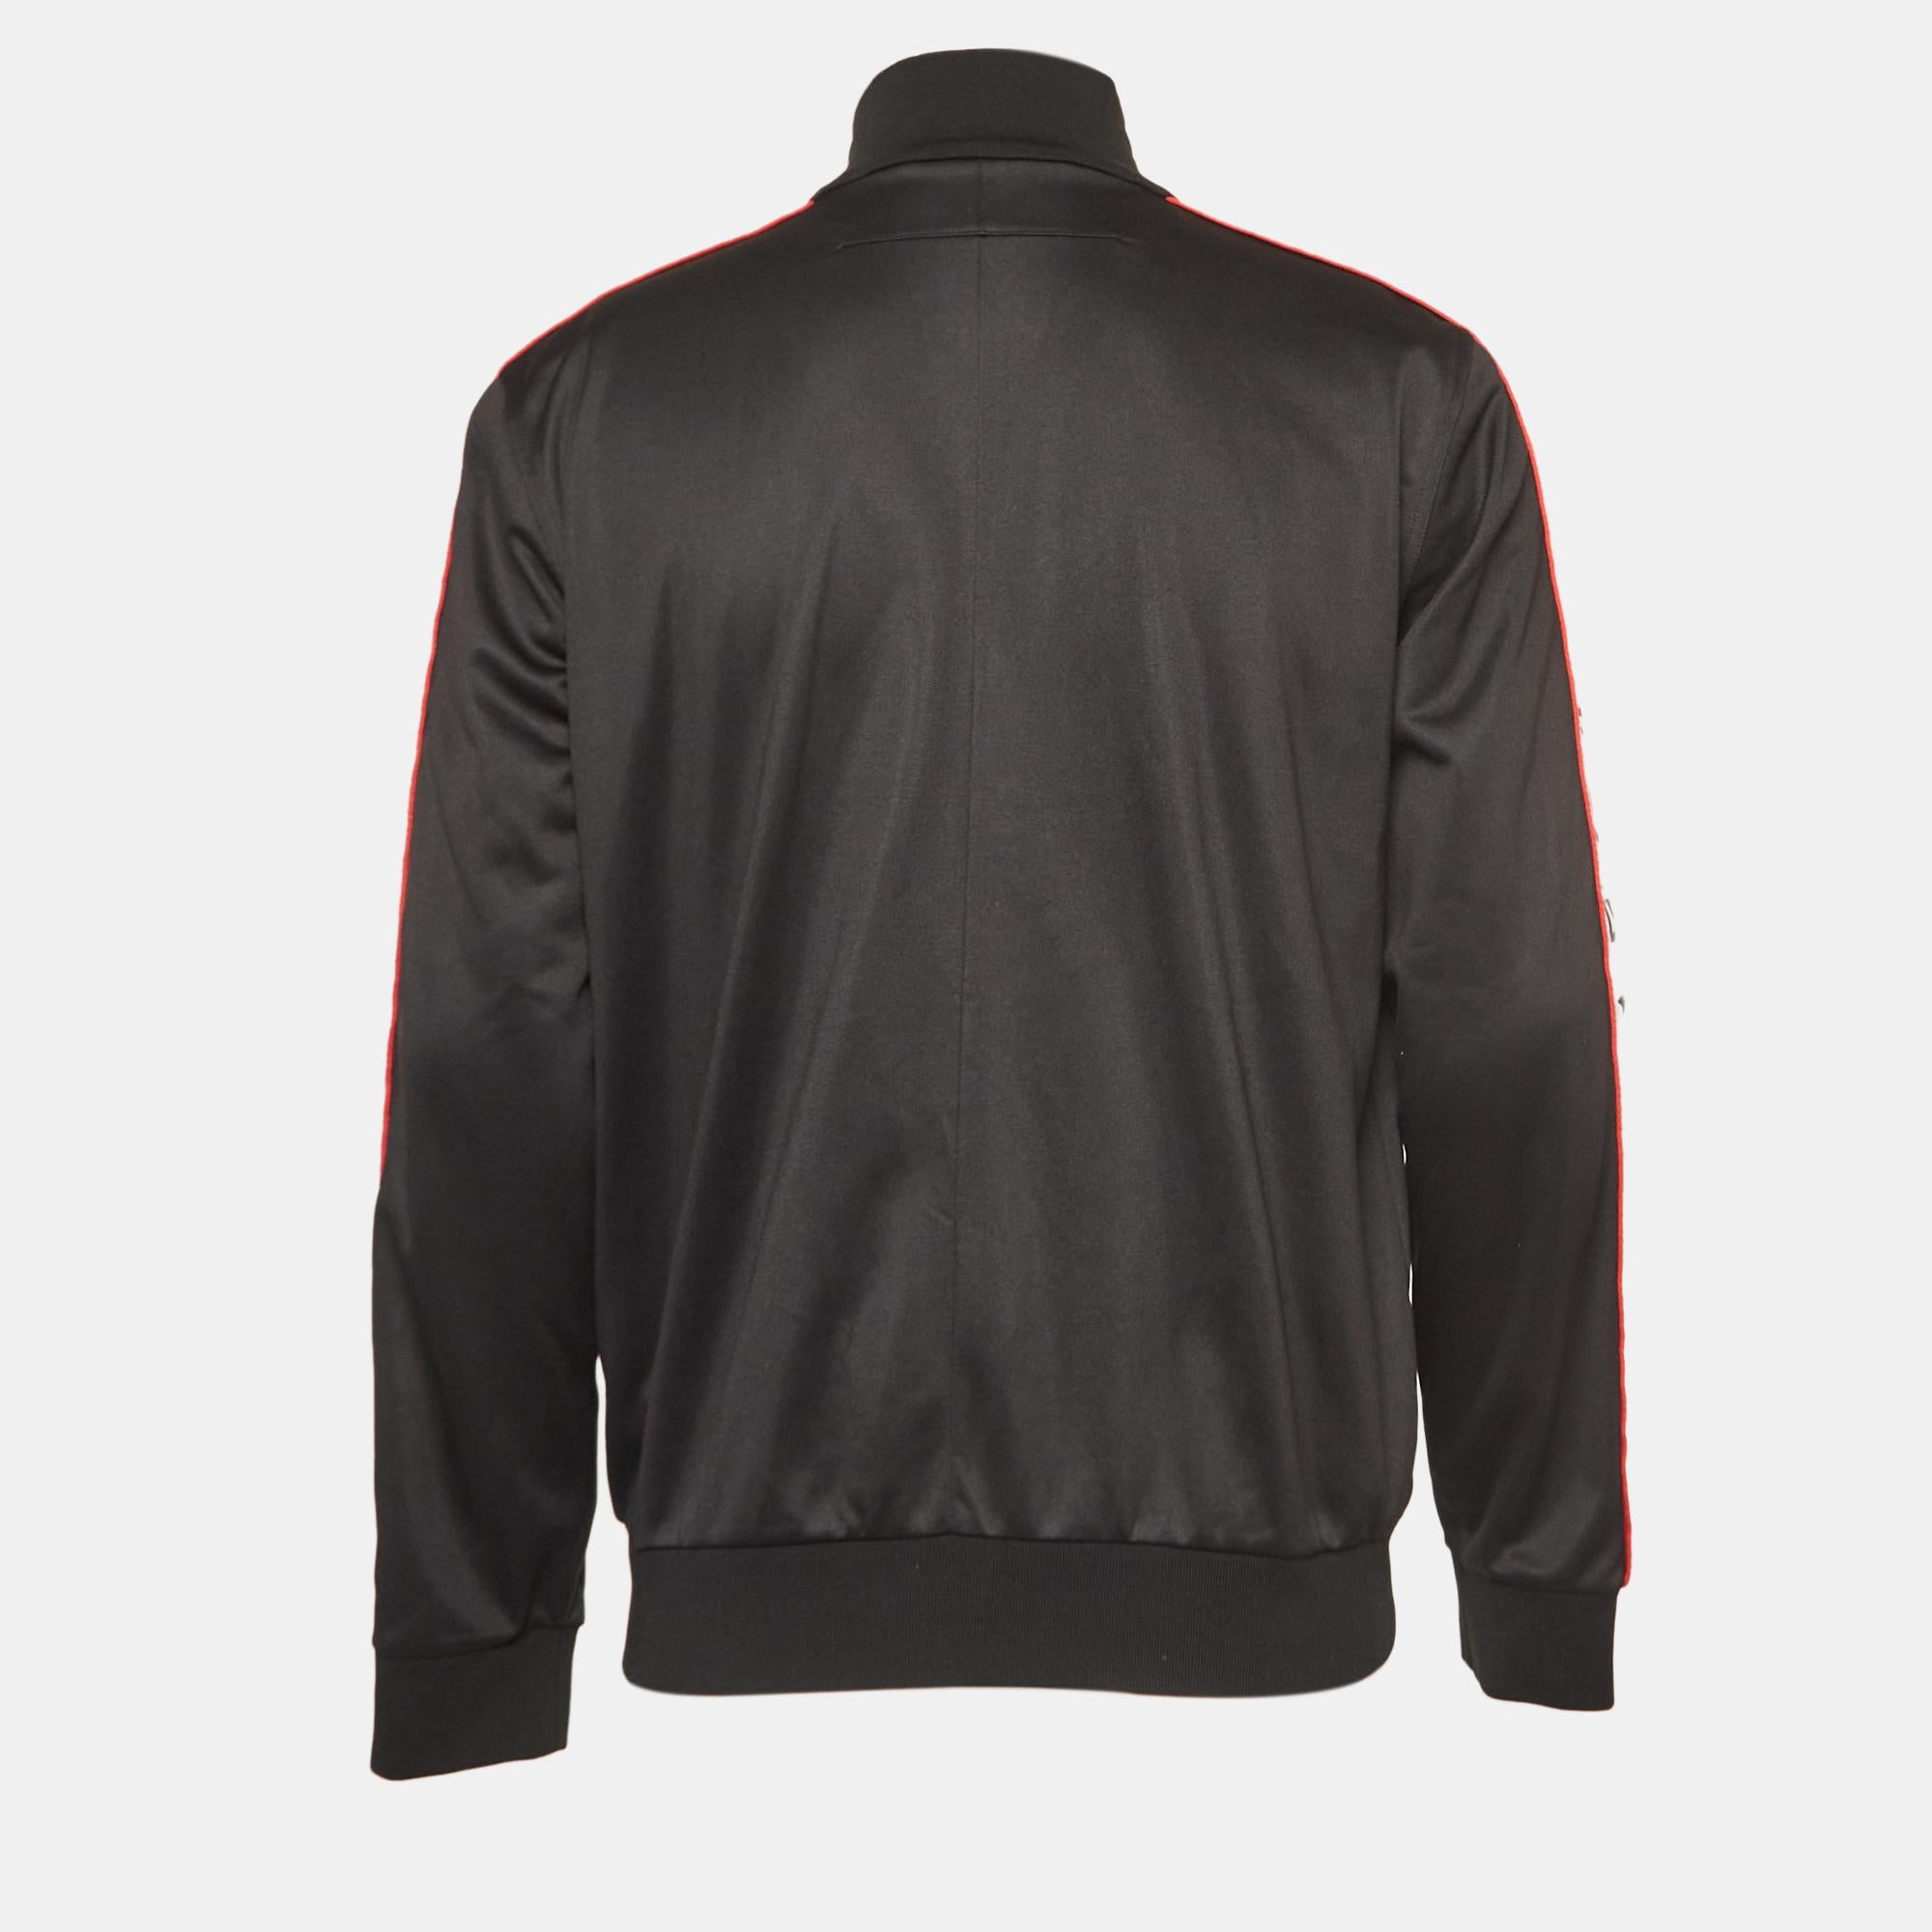 Le design minimal et la qualité sont réunis dans cette veste de survêtement de Givenchy. Rehaussée d'une bande logo, cette veste en jersey noir pour homme est un must en matière de style décontracté.

